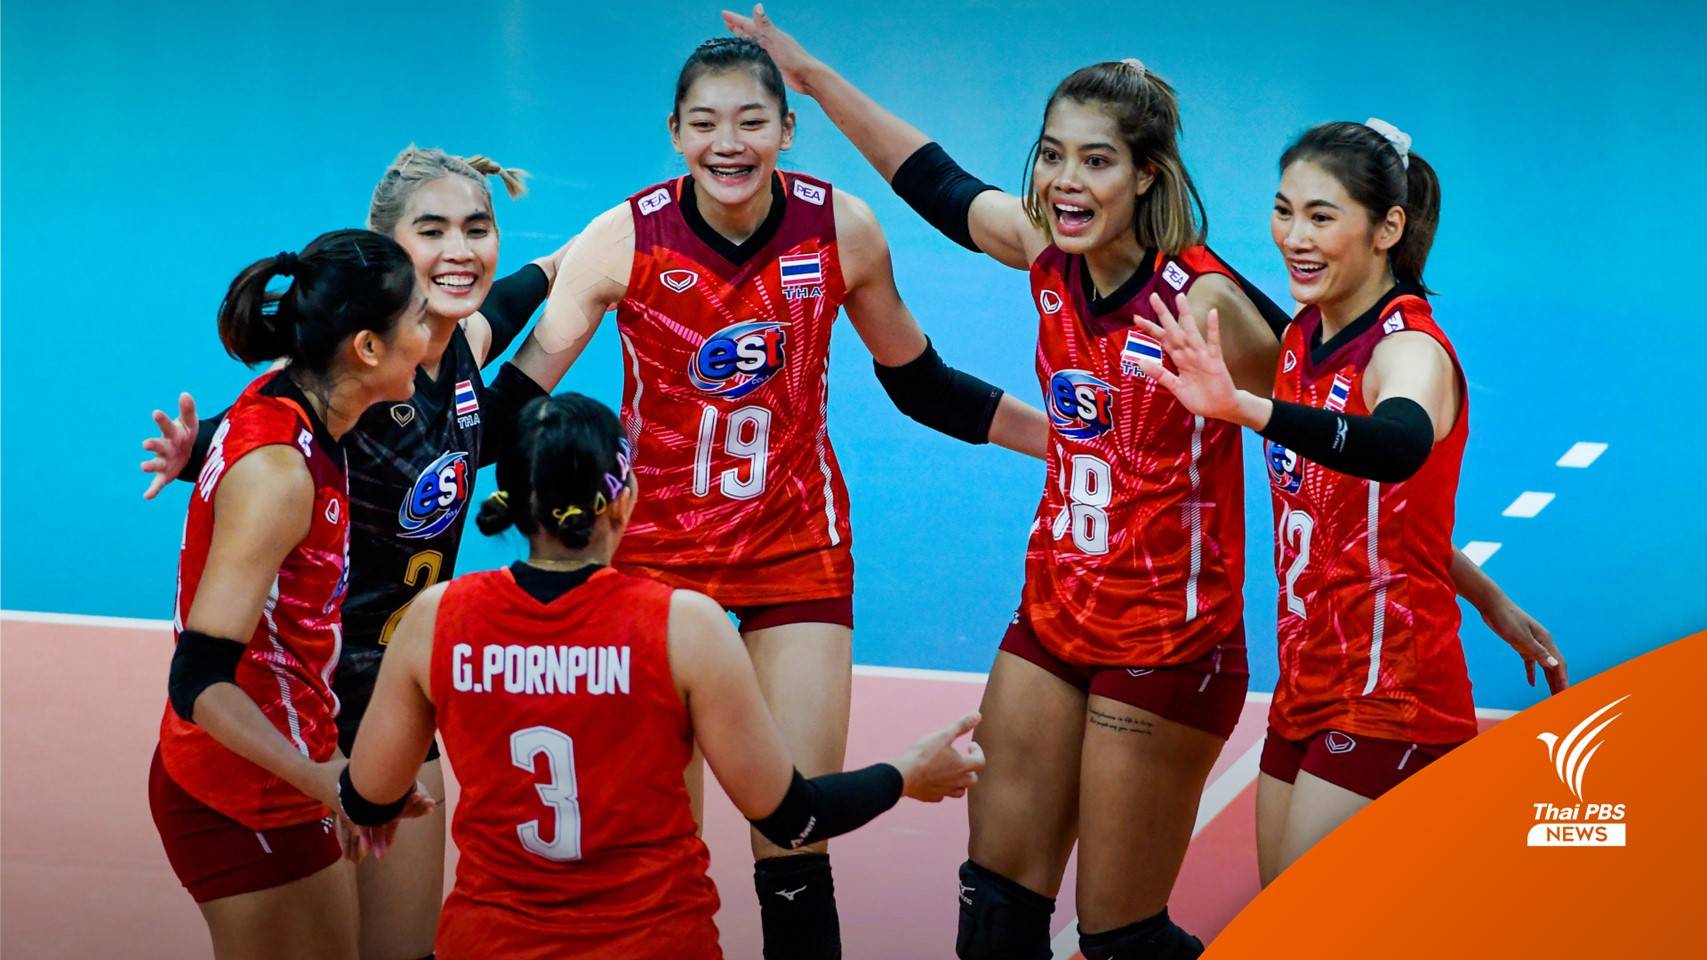 โปรแกรมวอลเลย์บอลหญิงไทย รอบ 16 ทีมสุดท้าย ศึกชิงแชมป์โลก 2022